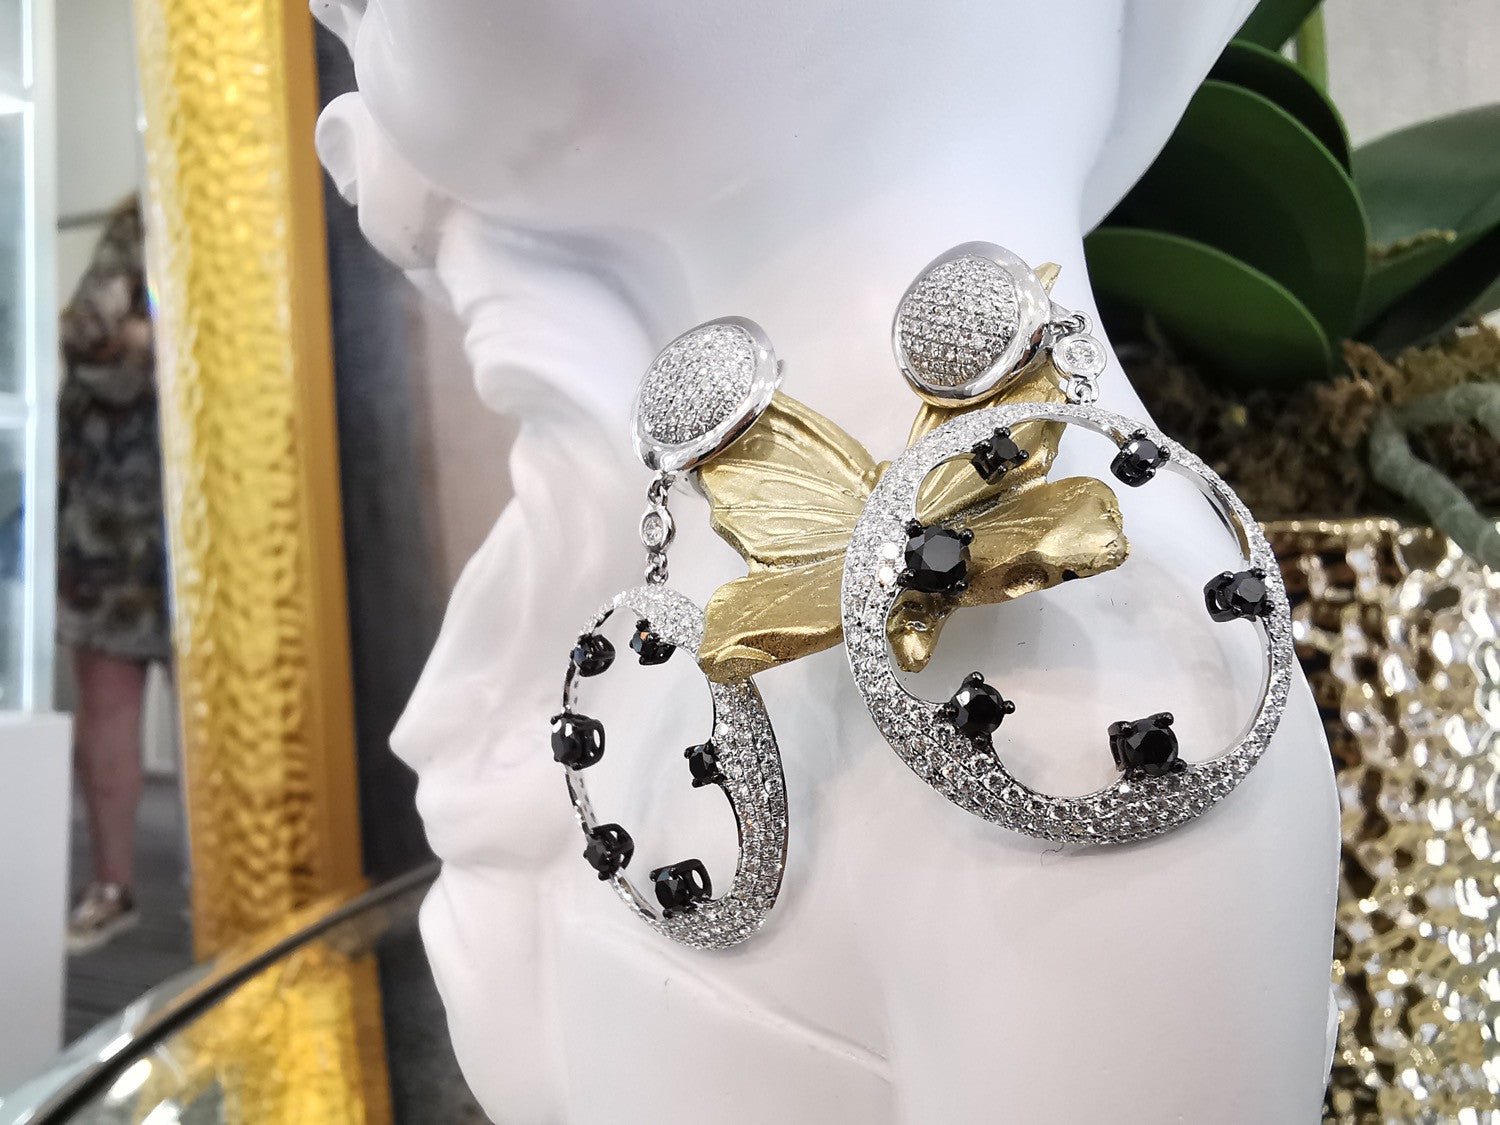 18ct White Gold Black and White Diamond Earrings - ForeverJewels Design Studio 8